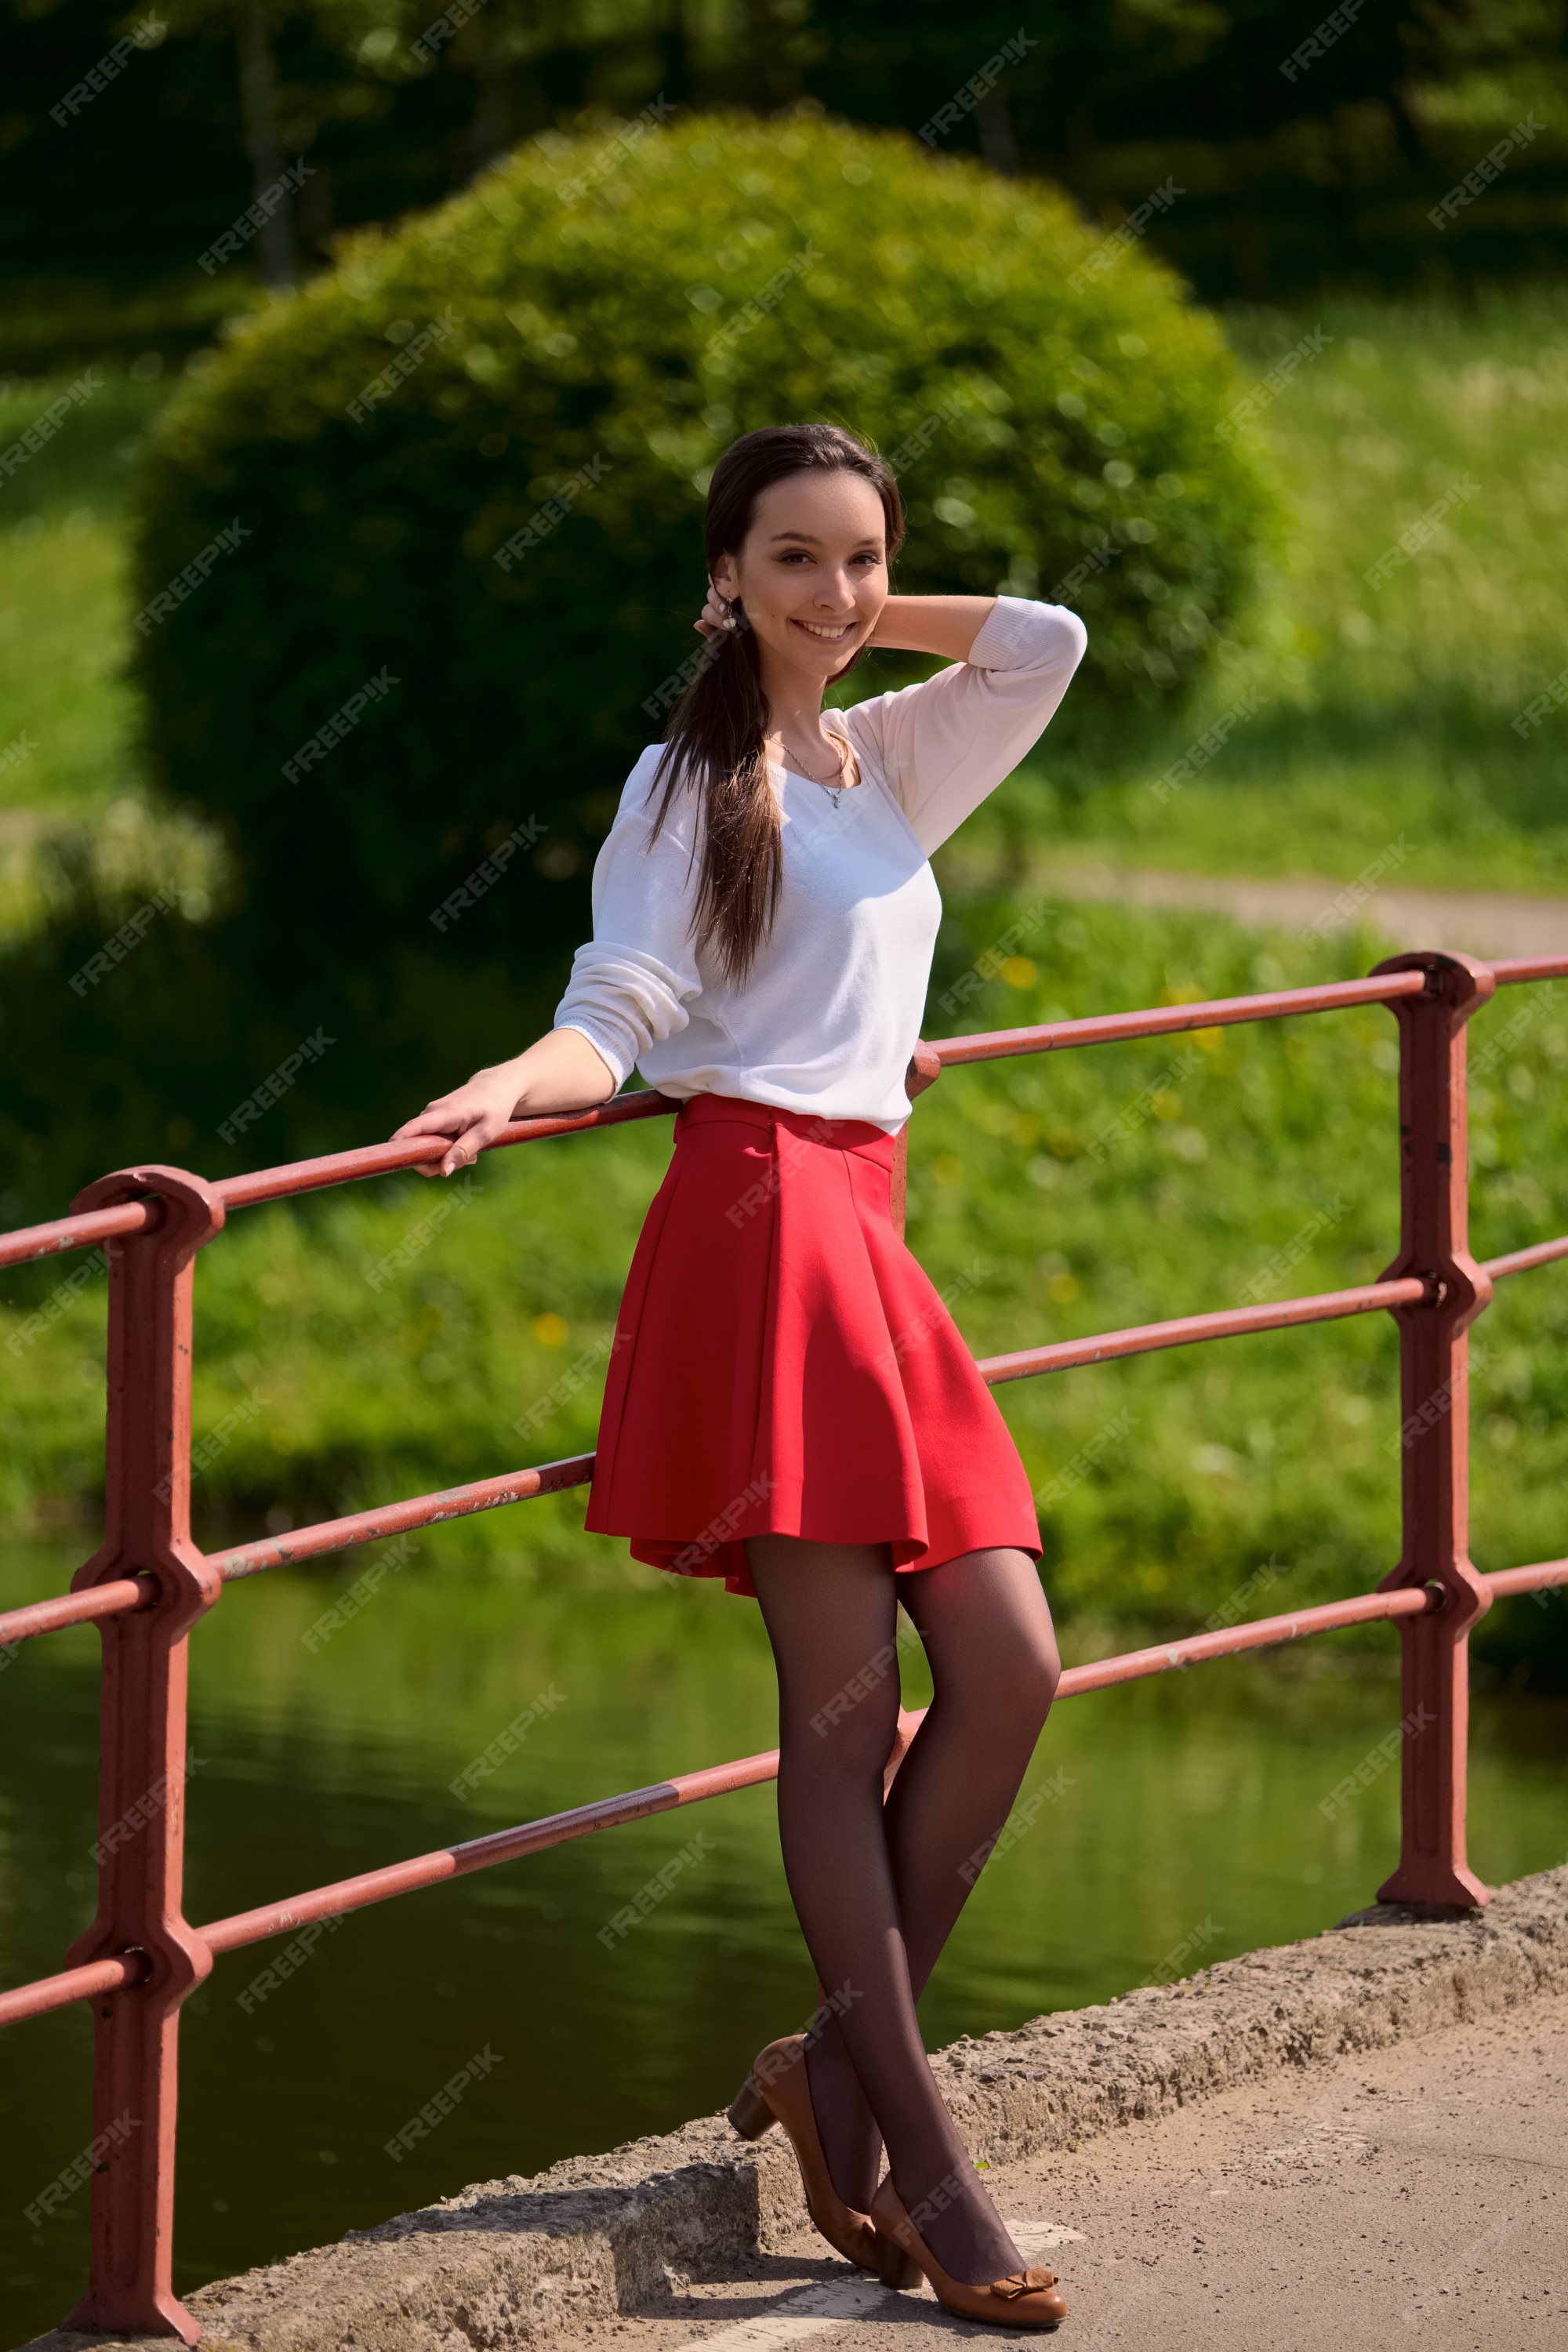 algodón Aflojar Oponerse a Retrato de una niña en falda roja y blusa blanca apoyada contra una baranda  del puente en la orilla del río | Foto Premium